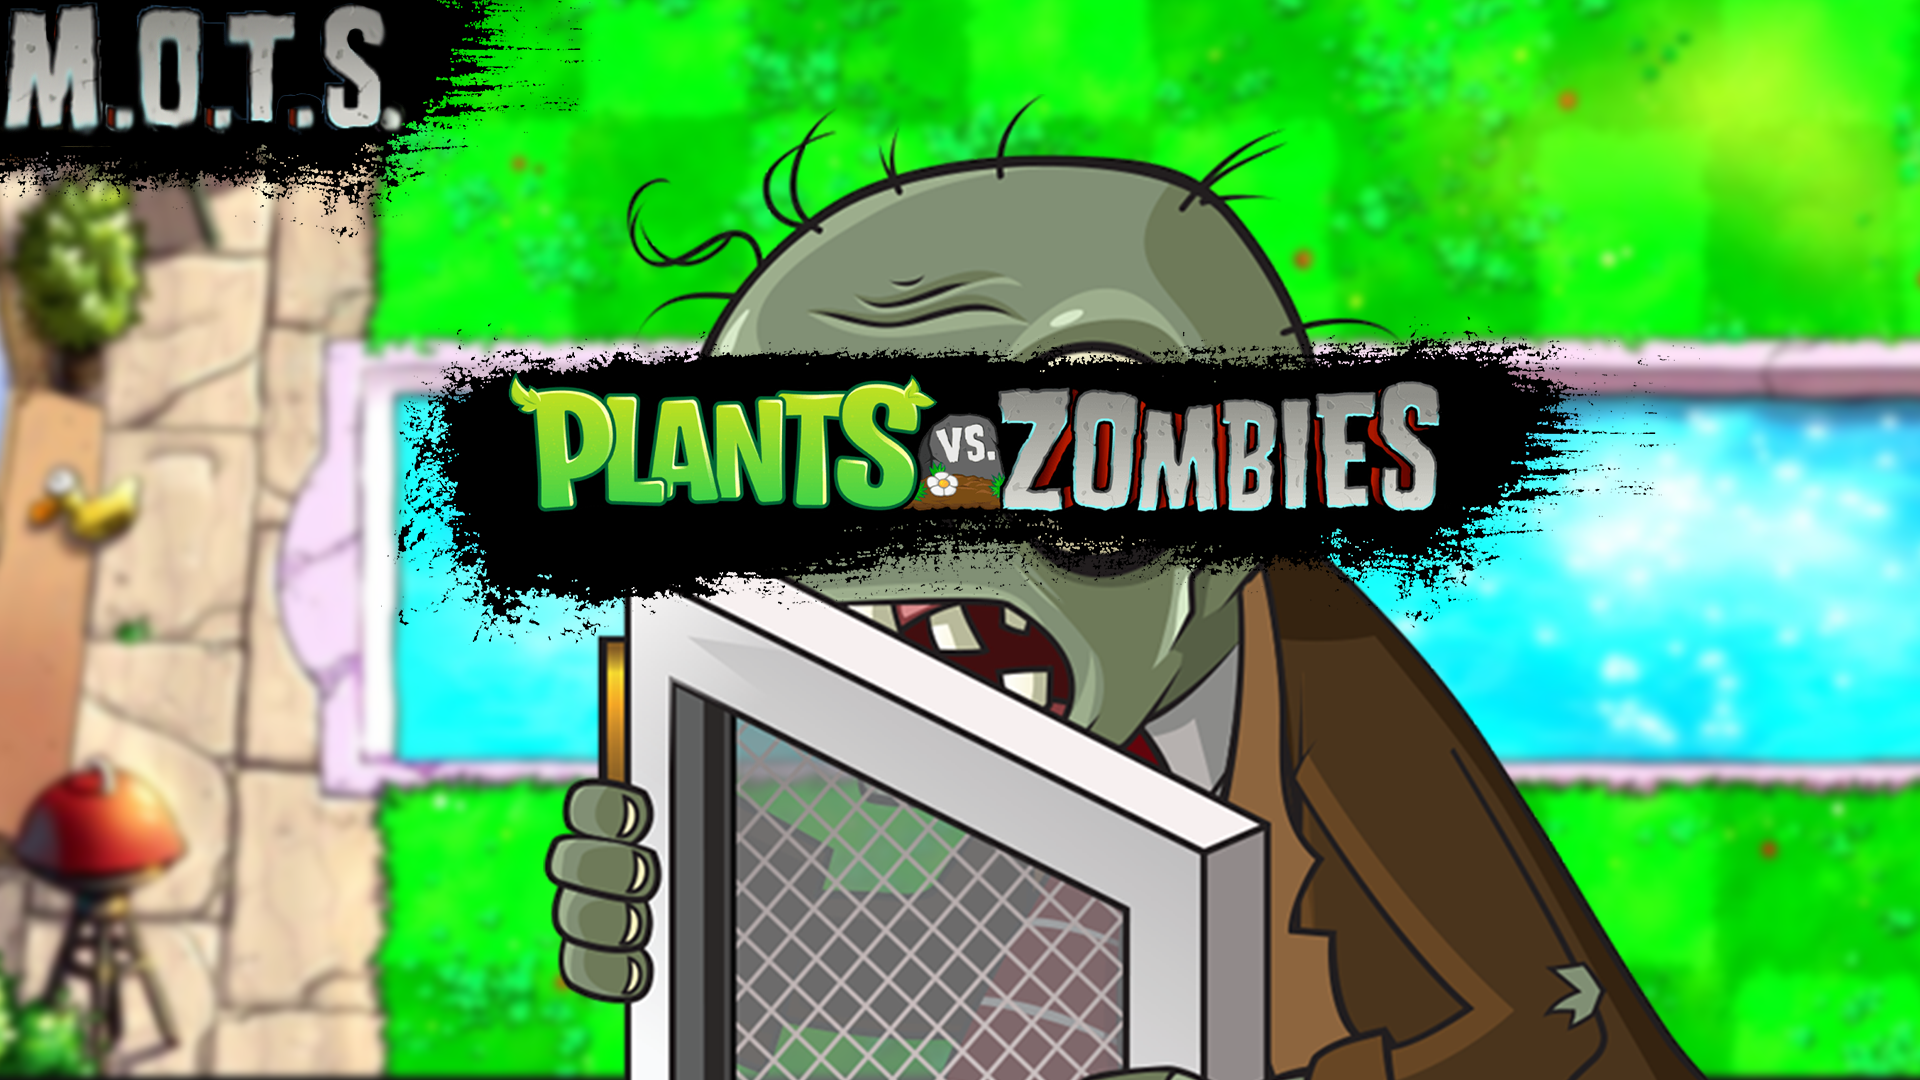 ТУСОВКА У БАССЕЙНА ➠ Plants vs. Zombies M.O.T.S #3